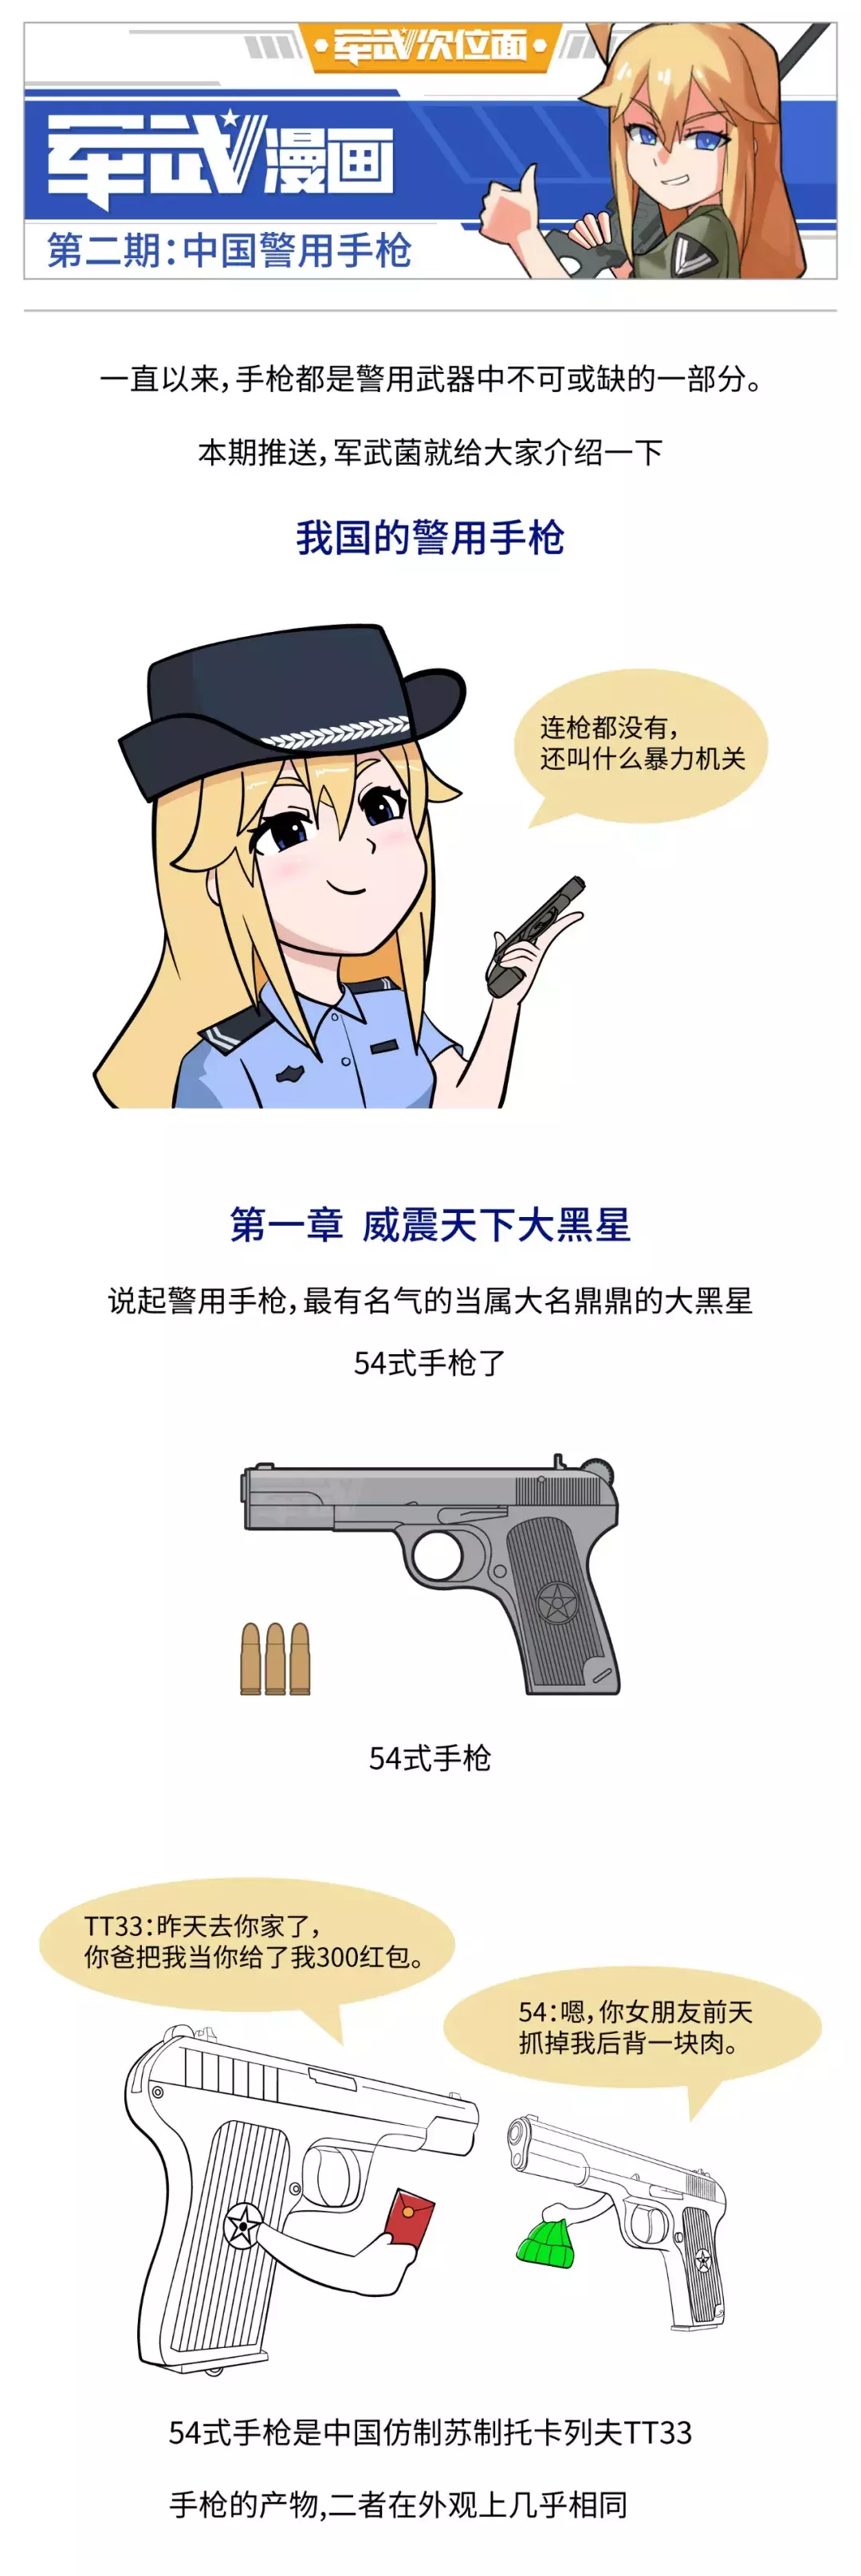 中国警用手枪发展史